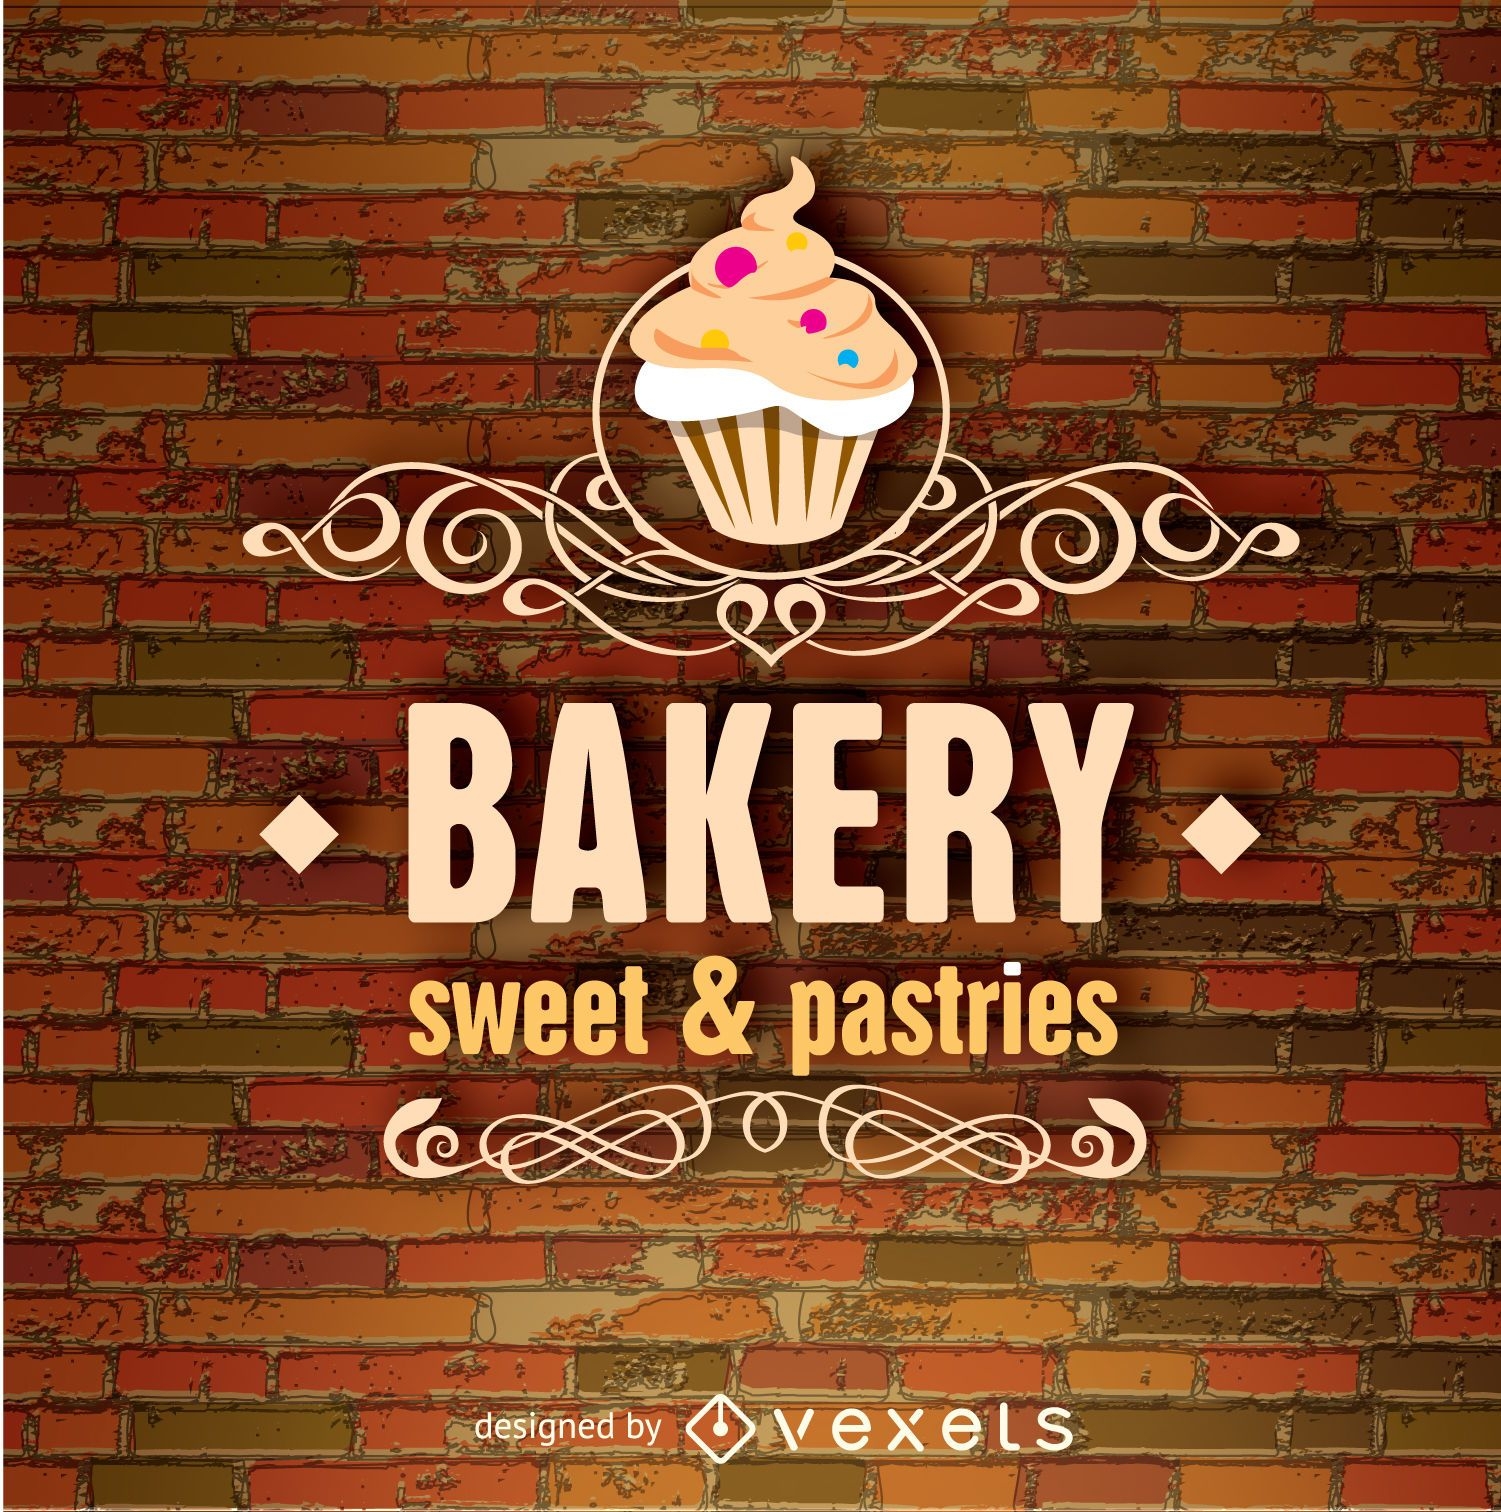 Bakery emblem over a brick wall